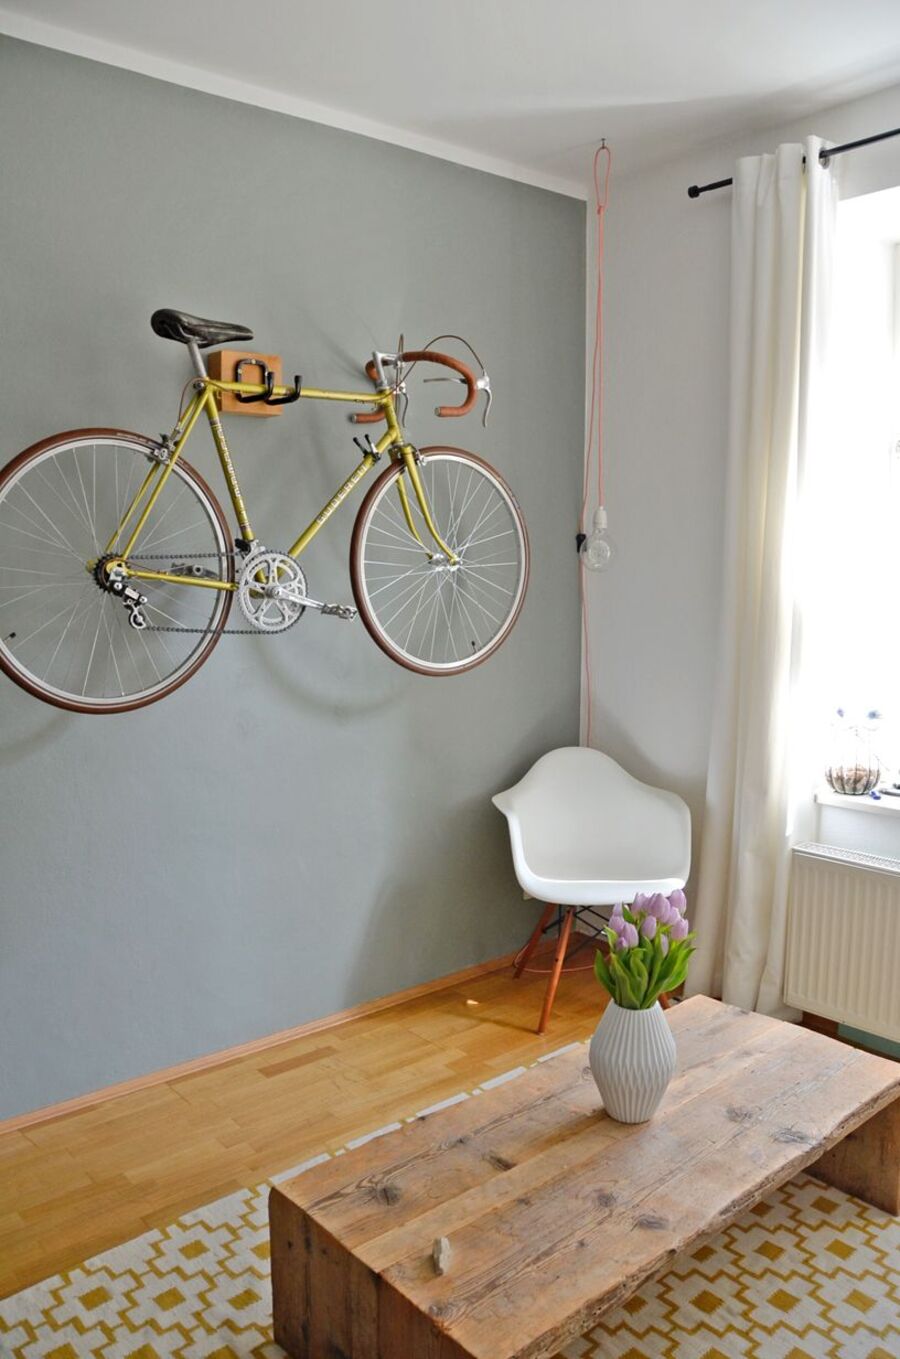 Rincón de una sala de estar con piso de madera, alfombra amarilla con blanco, mesa de centro café y silla plástica blanca. En una de sus paredes hay un perchero que sostiene una bicicleta pistera amarilla.